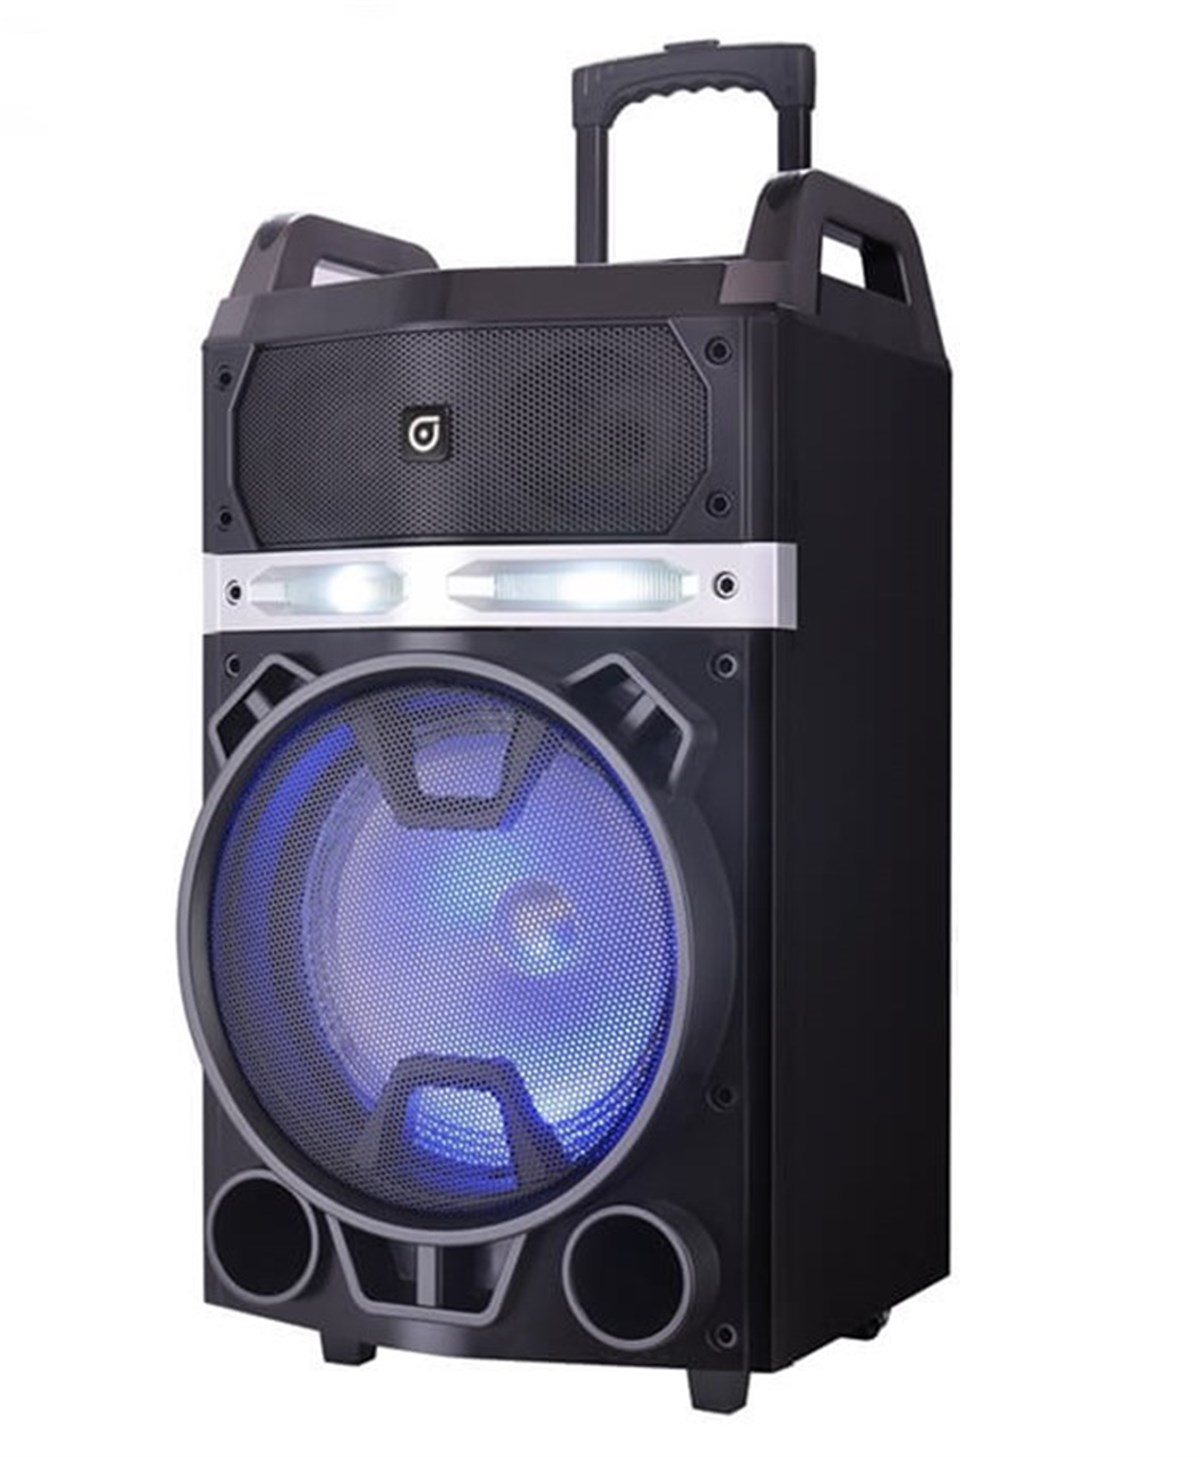 Oyility NB-121 Mikrofonlu Taşınabilir Portatif Ses Sistemi 150 Watt en ucuz  fiyatları